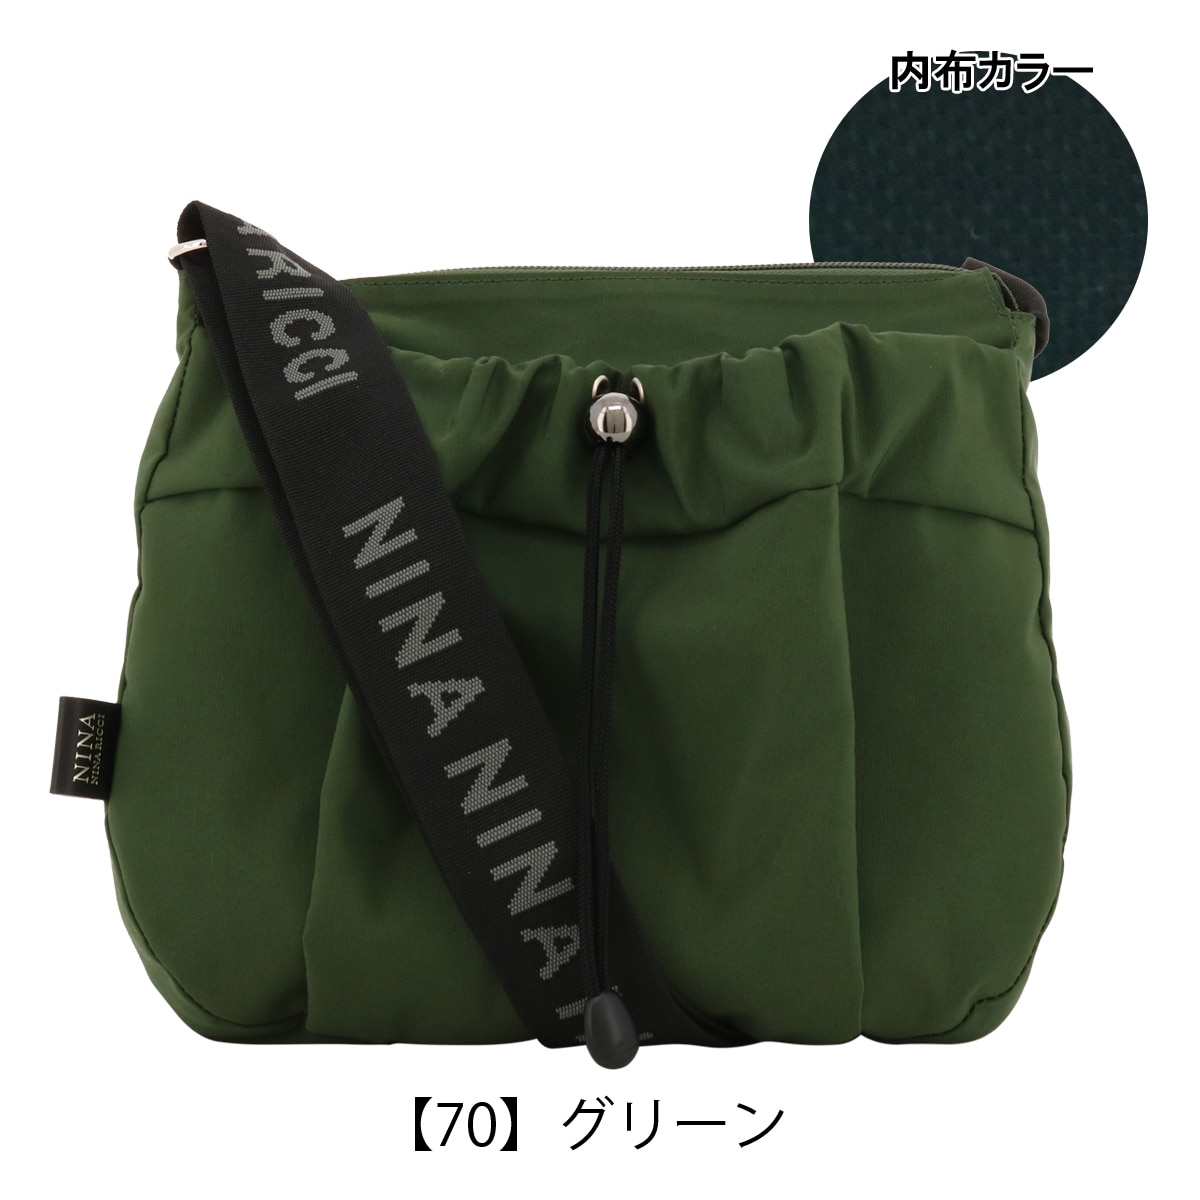 【入荷予定】美品本物ニナリッチNINARICCIキャリーケーススーツバッグビジネスバック黒 バッグ